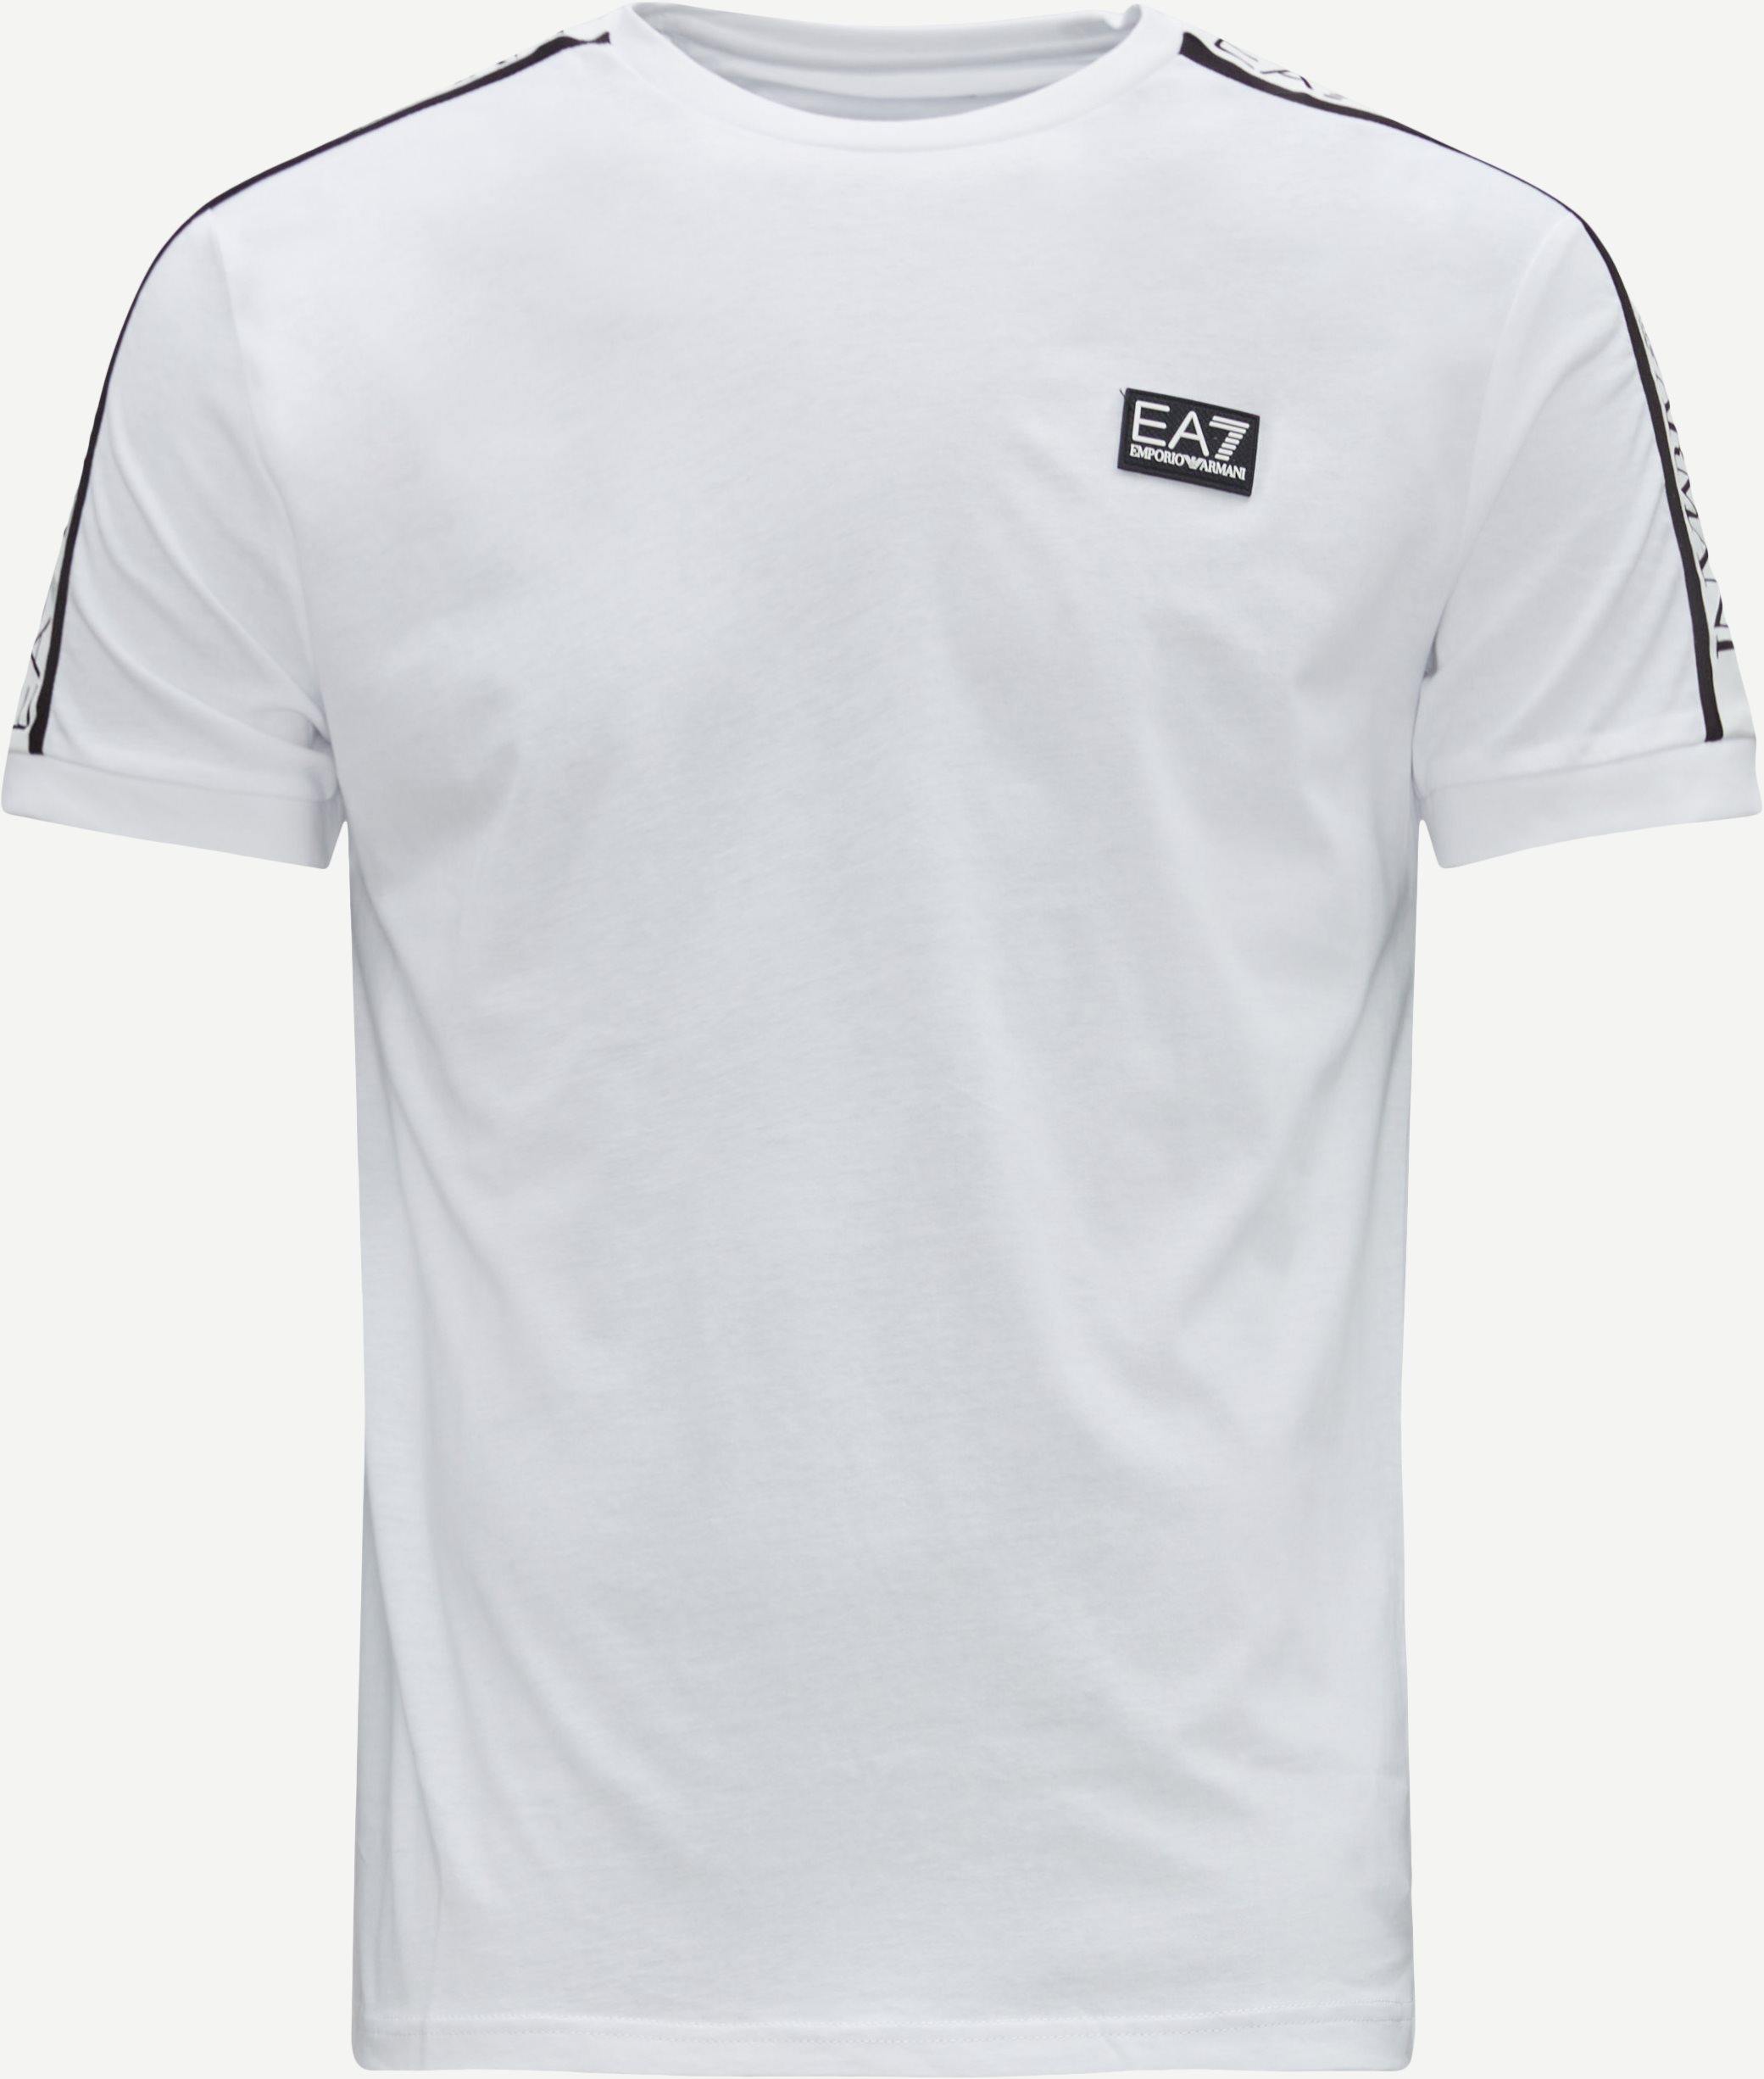 T-shirts - White